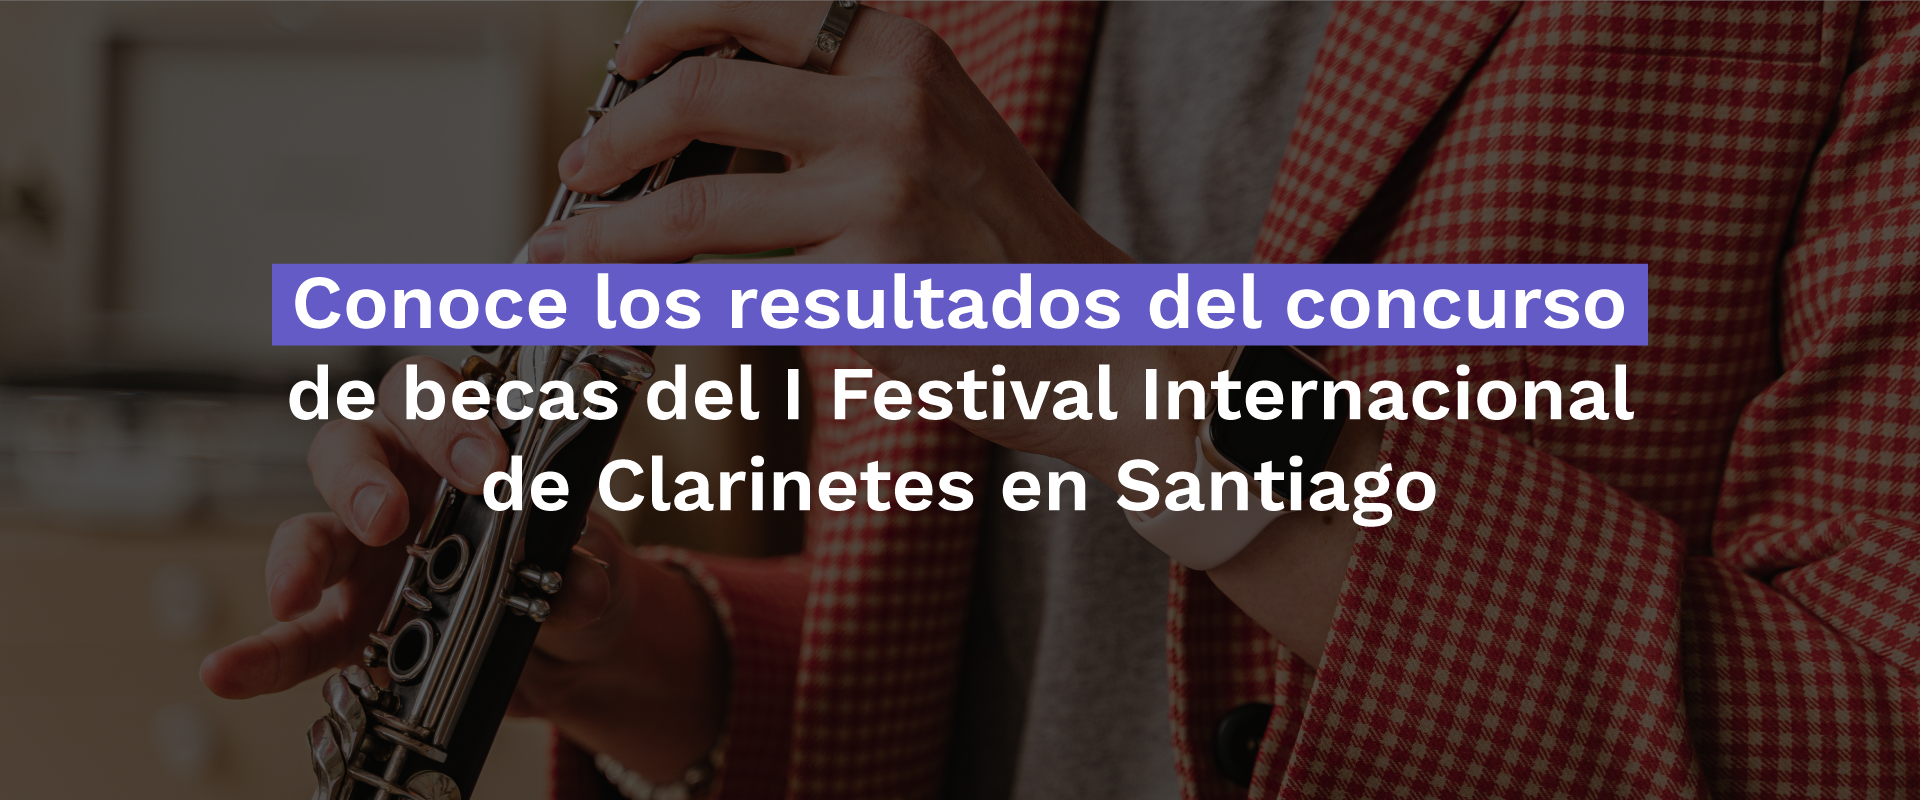 https://foji.cl/noticias/noticias/conoce-los-resultados-del-concurso-de-becas-del-i-festival-internacional-de-clarinetes-en-santiago.html